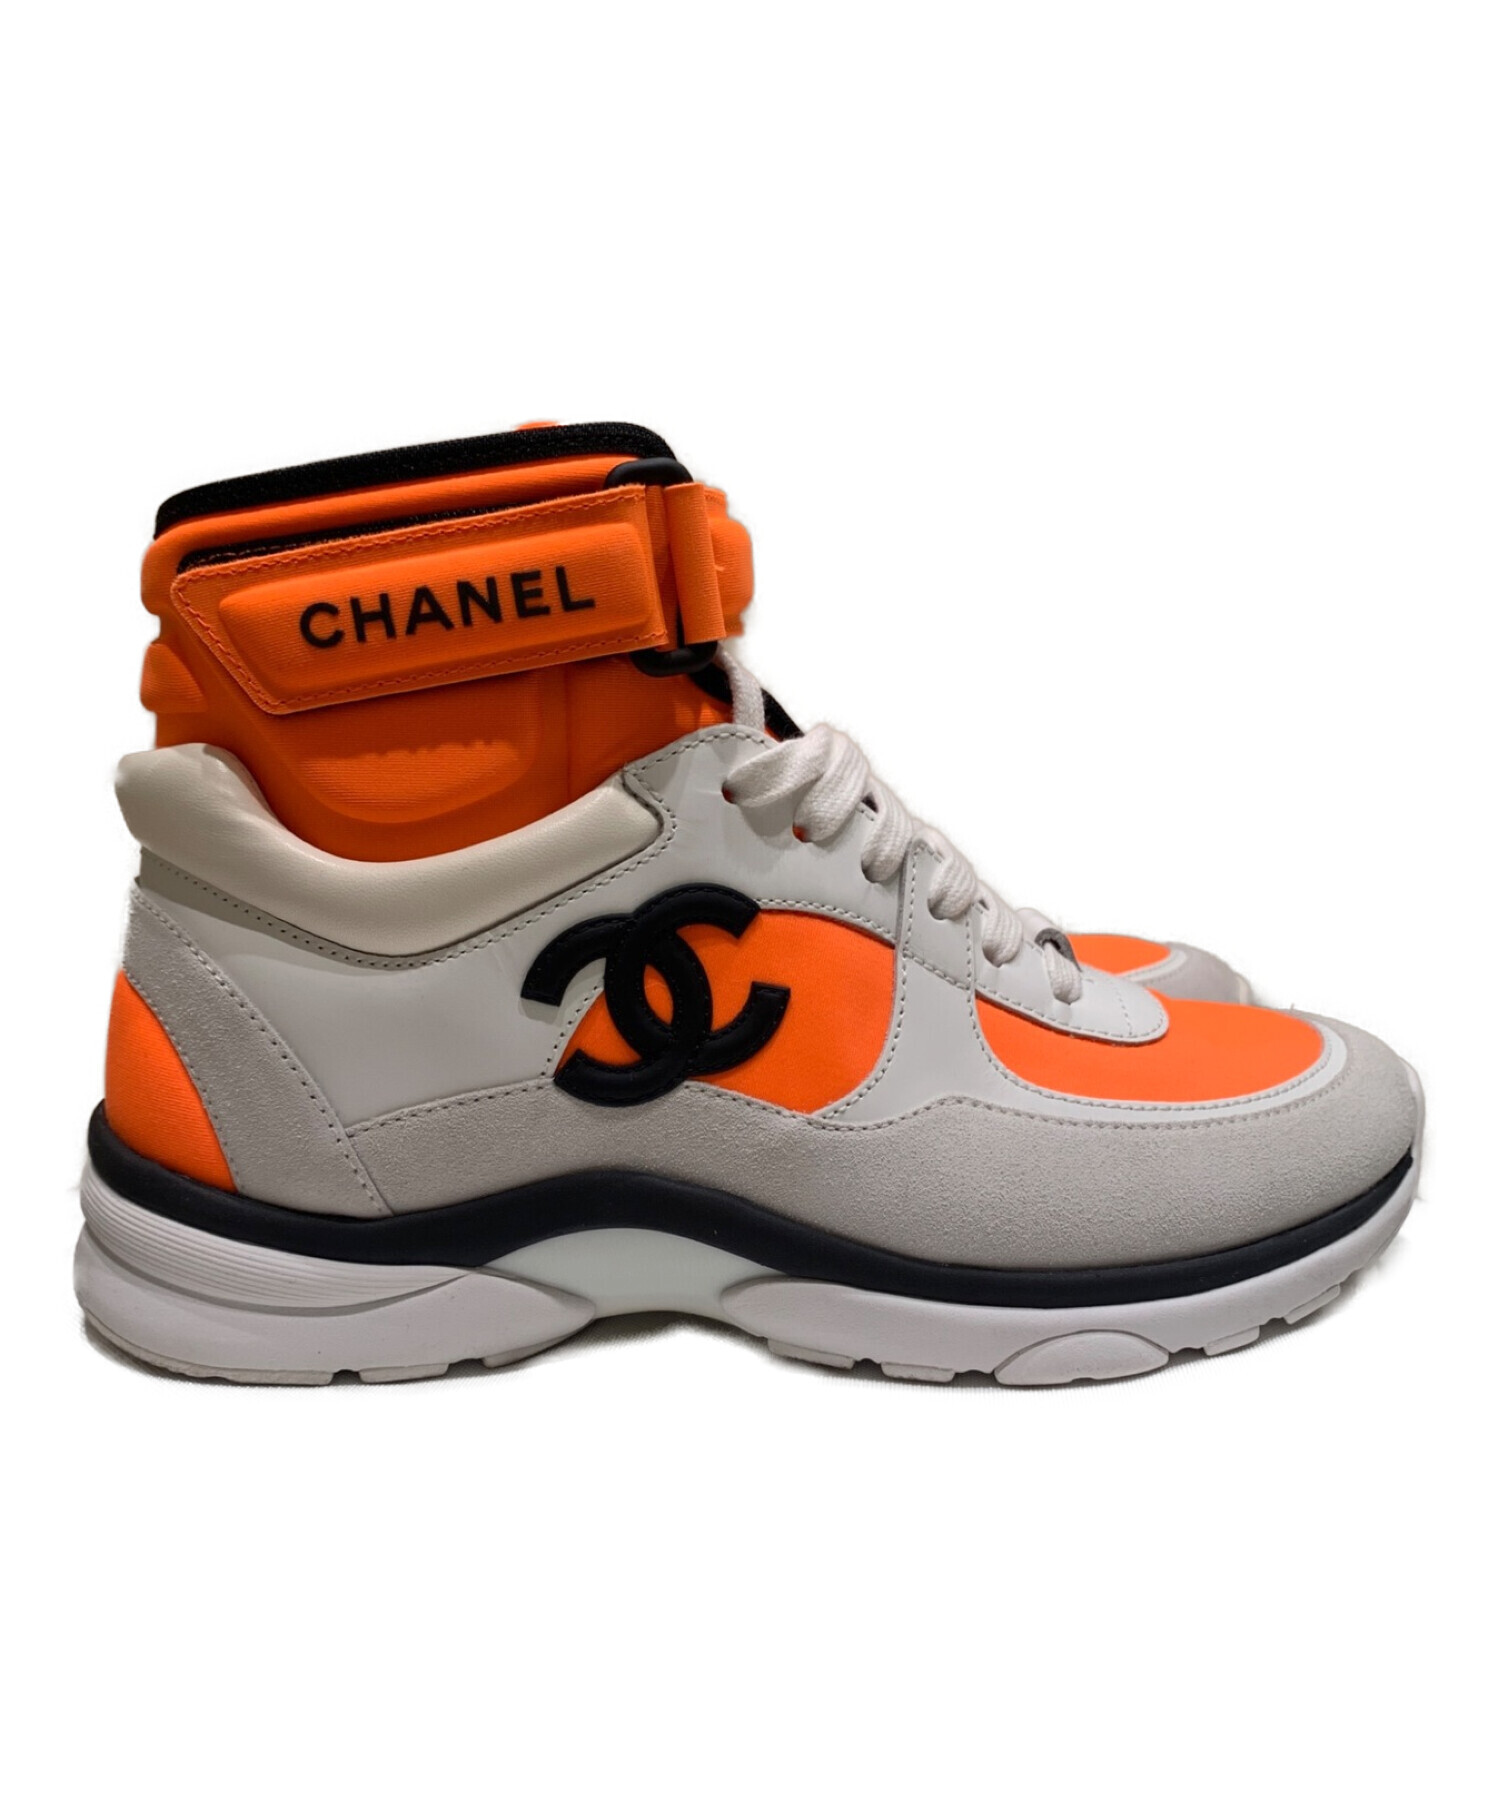 CHANEL (シャネル) ココマークハイカットスニーカー ホワイト×オレンジ サイズ:36